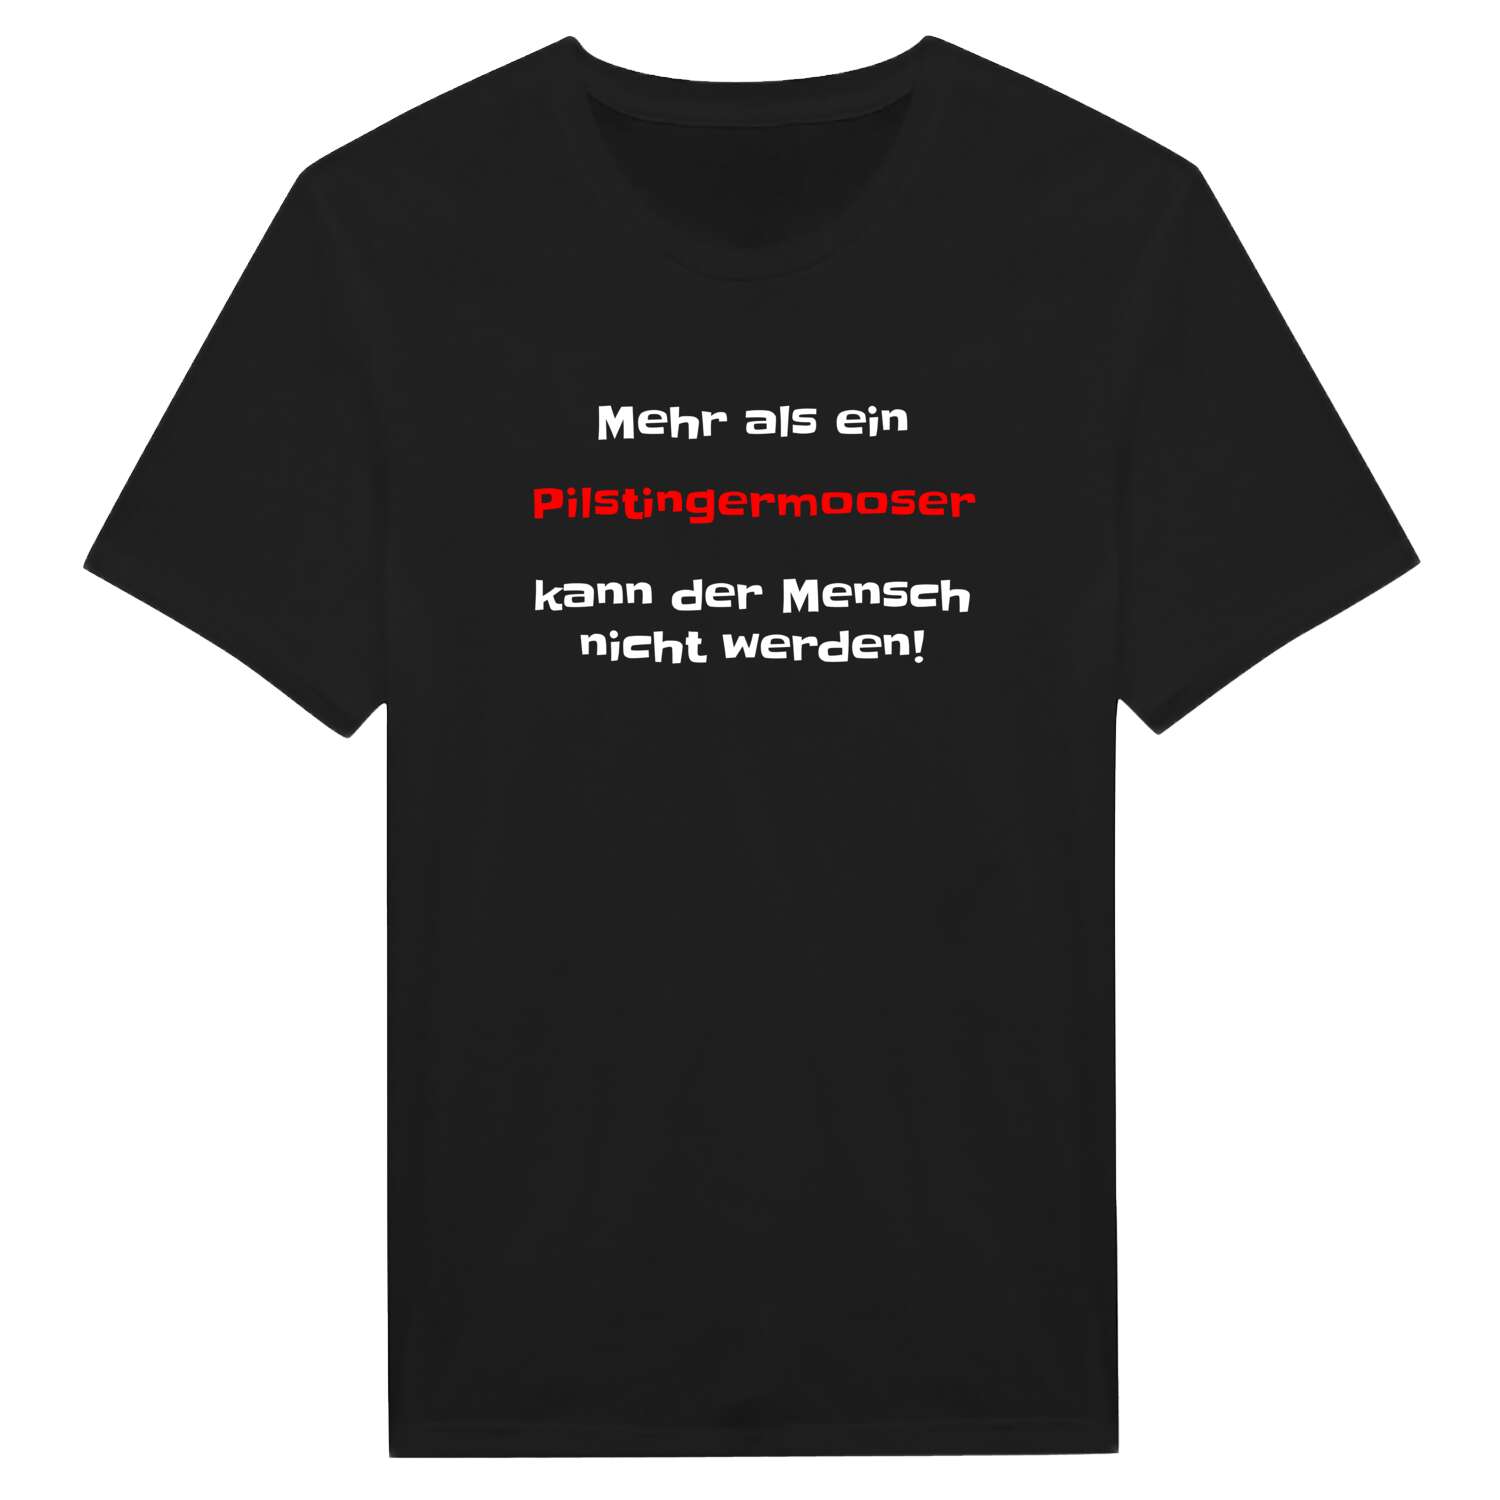 Pilstingermoos T-Shirt »Mehr als ein«